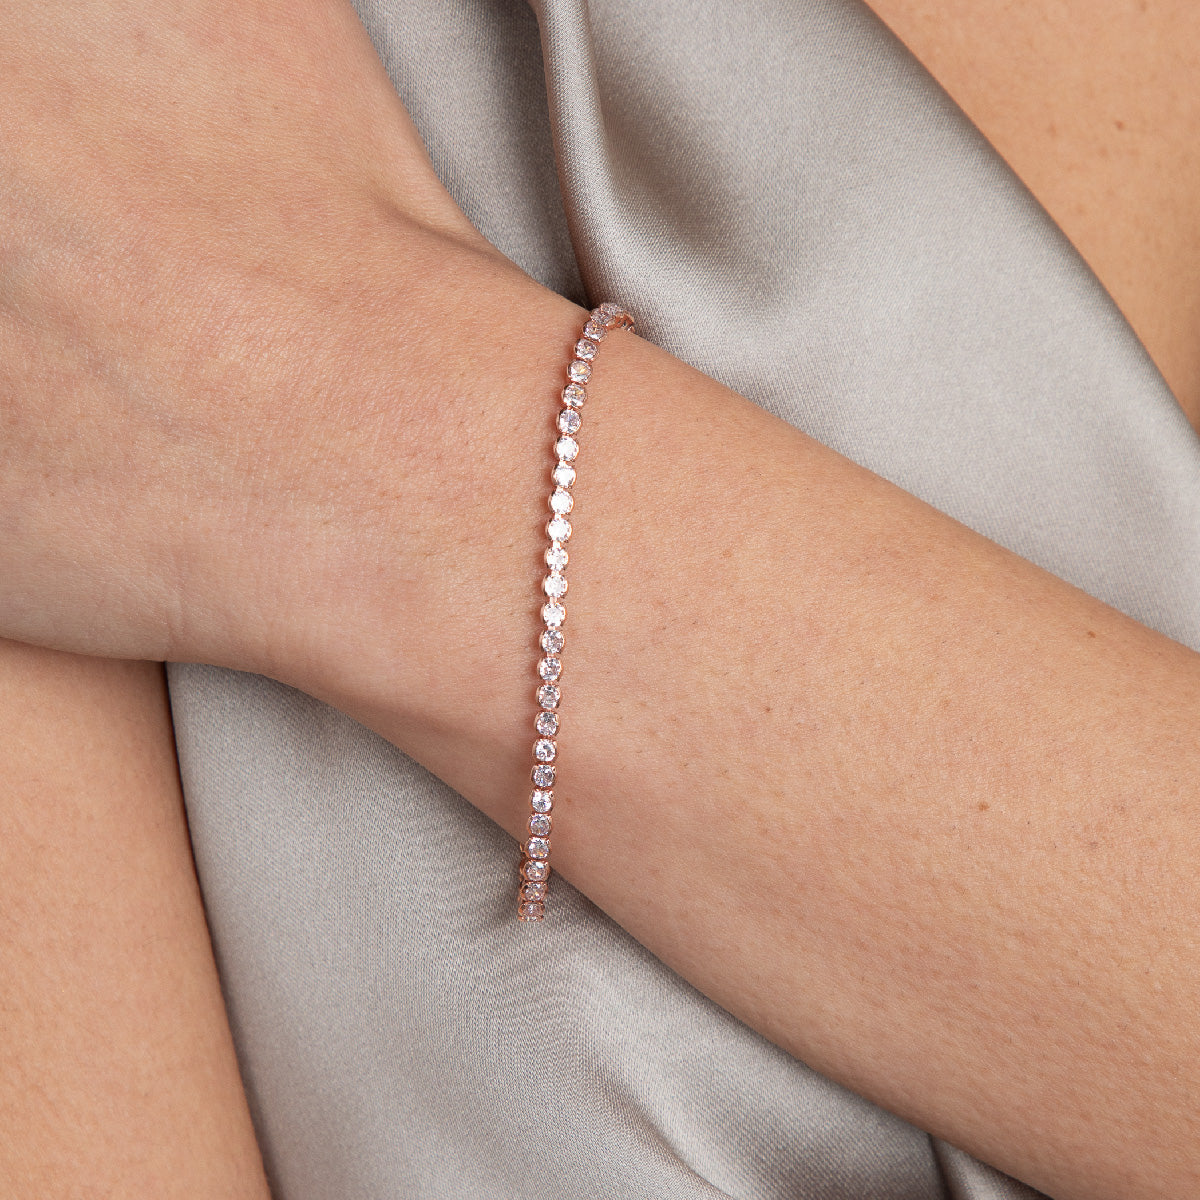 Chain Bracelet - Gift for Girlfriend - Tamia Chain Bracelet by Blingvine